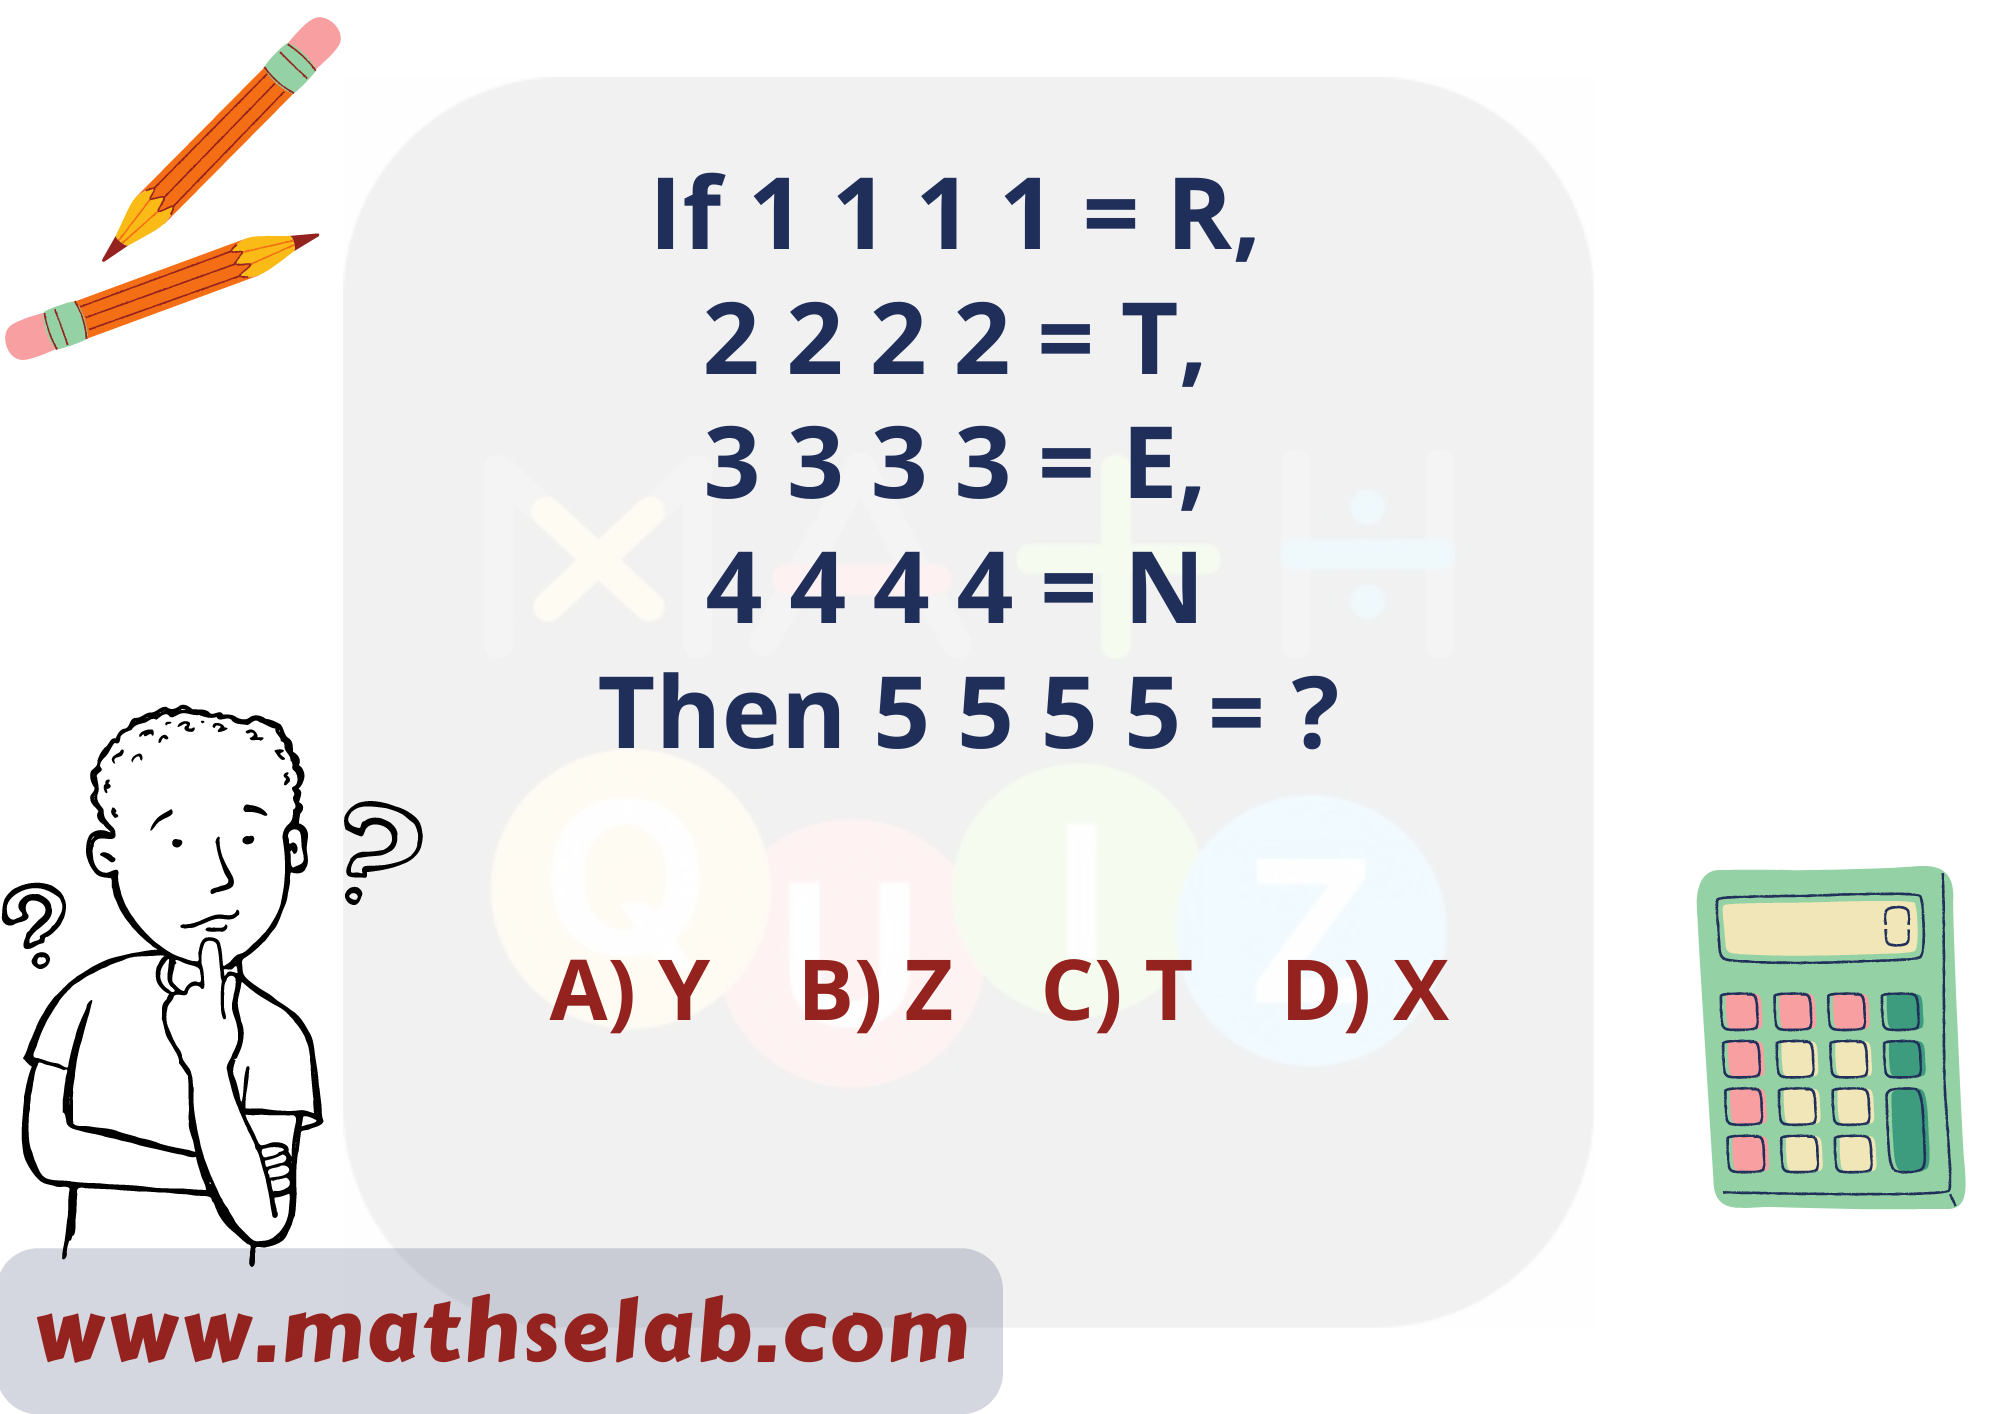 If 1 1 1 1 = R, 2 2 2 2 = T, 3 3 3 3 = E, 4 4 4 4 = N Then 5 5 5 5 = - www.mathselab.com